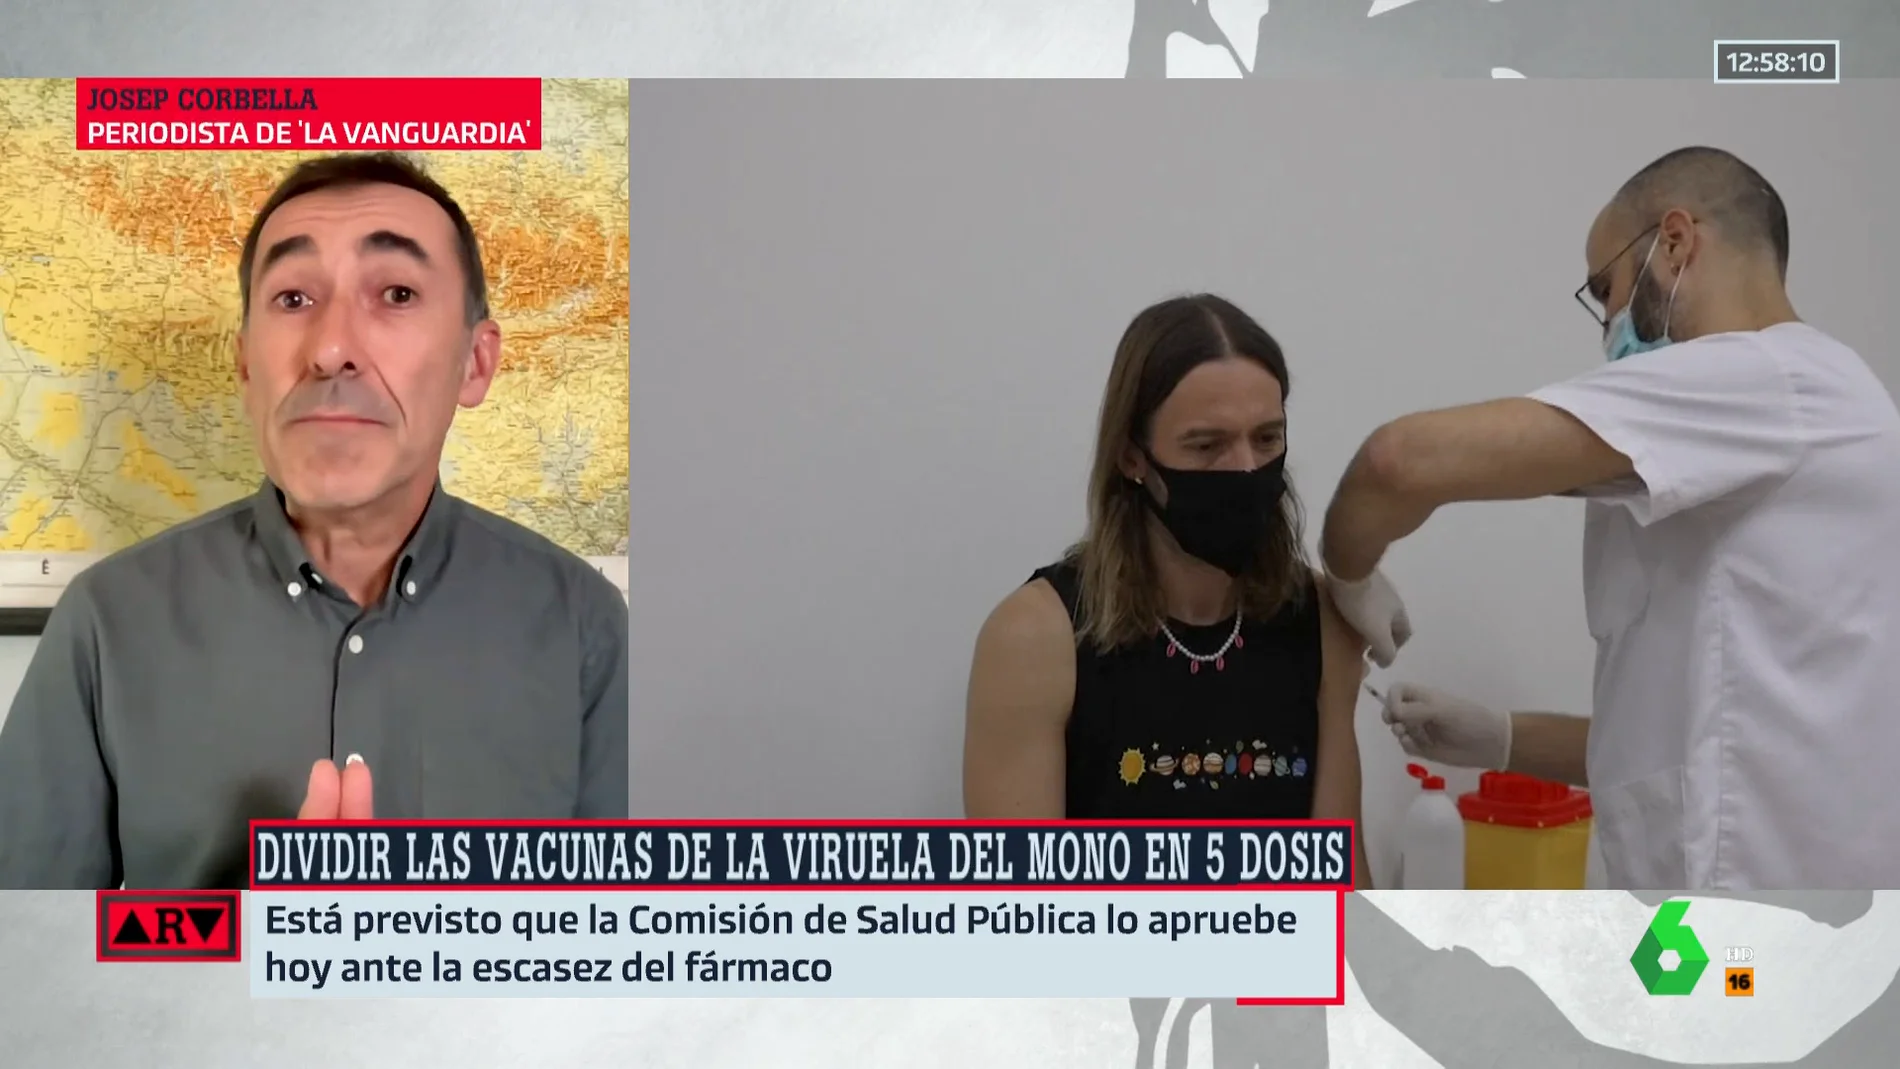 Josep Corbella, sobre la viruela del mono: "Estamos lejos de controlarla, esta crisis va a ser larga"